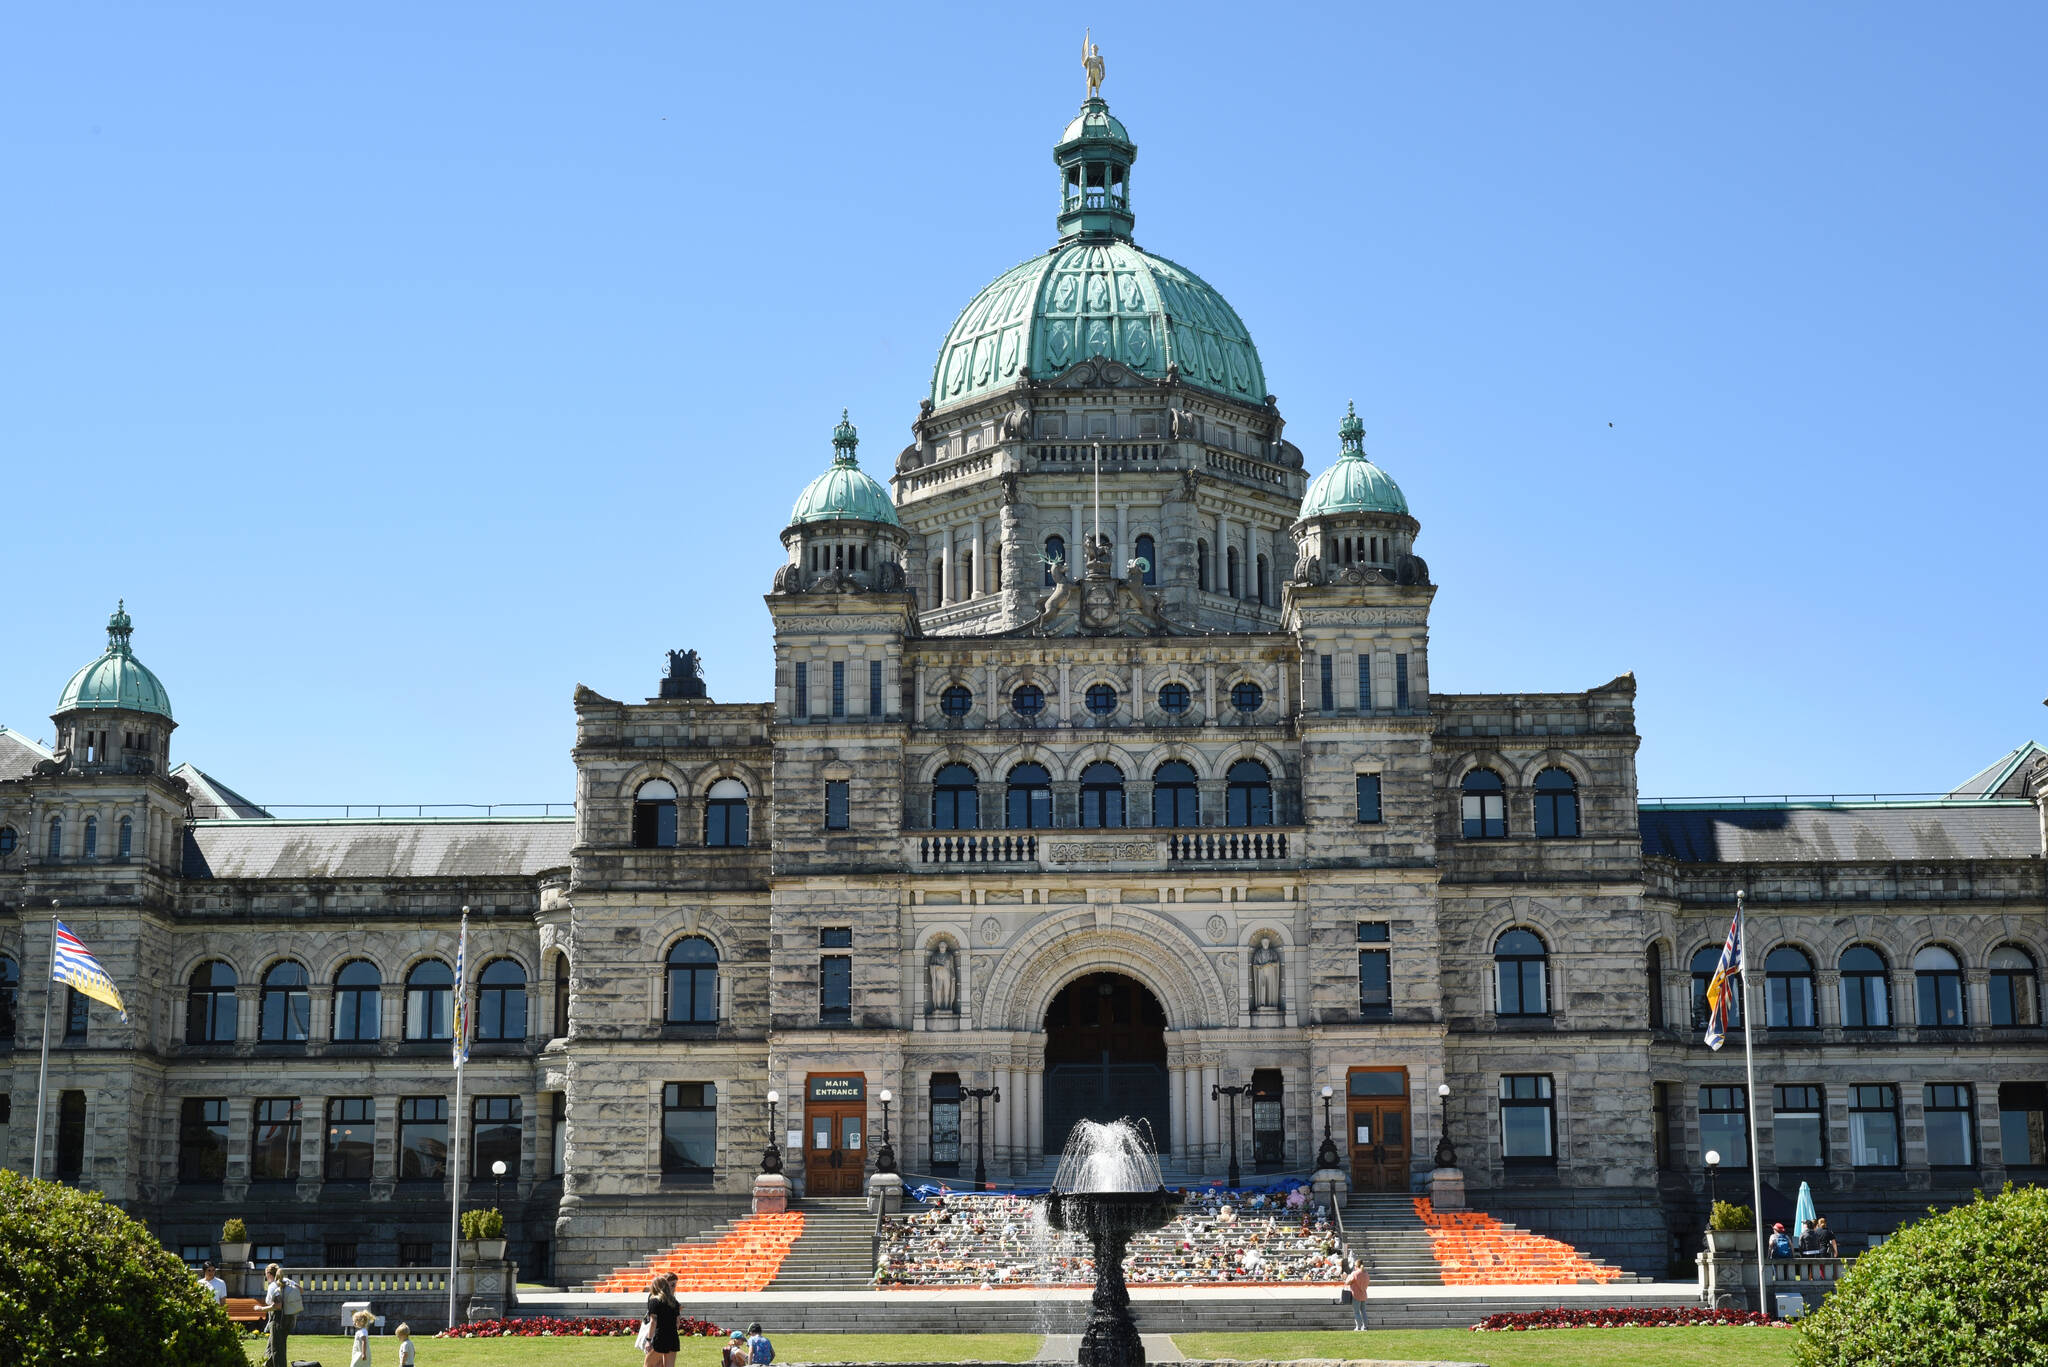 June 21, 2021 - The front of the BC Legislature’s Parliament building designed by architect Frances Rattenbury. Don Denton photograph